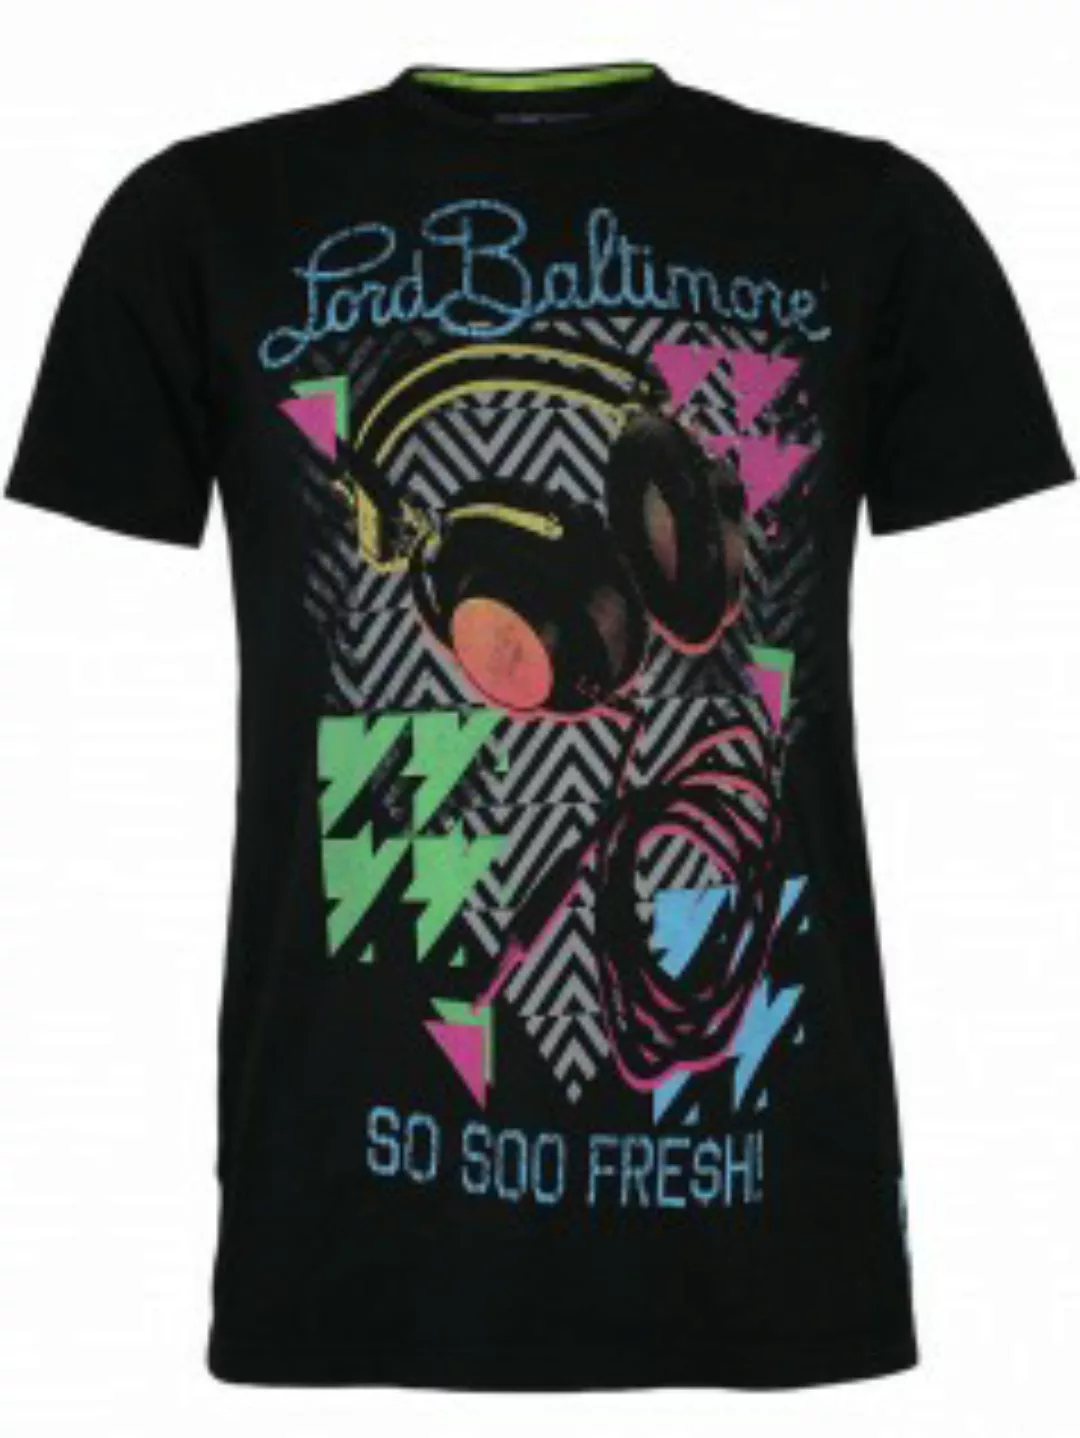 Lord Baltimore Herren Shirt Soo Soo Fresh günstig online kaufen